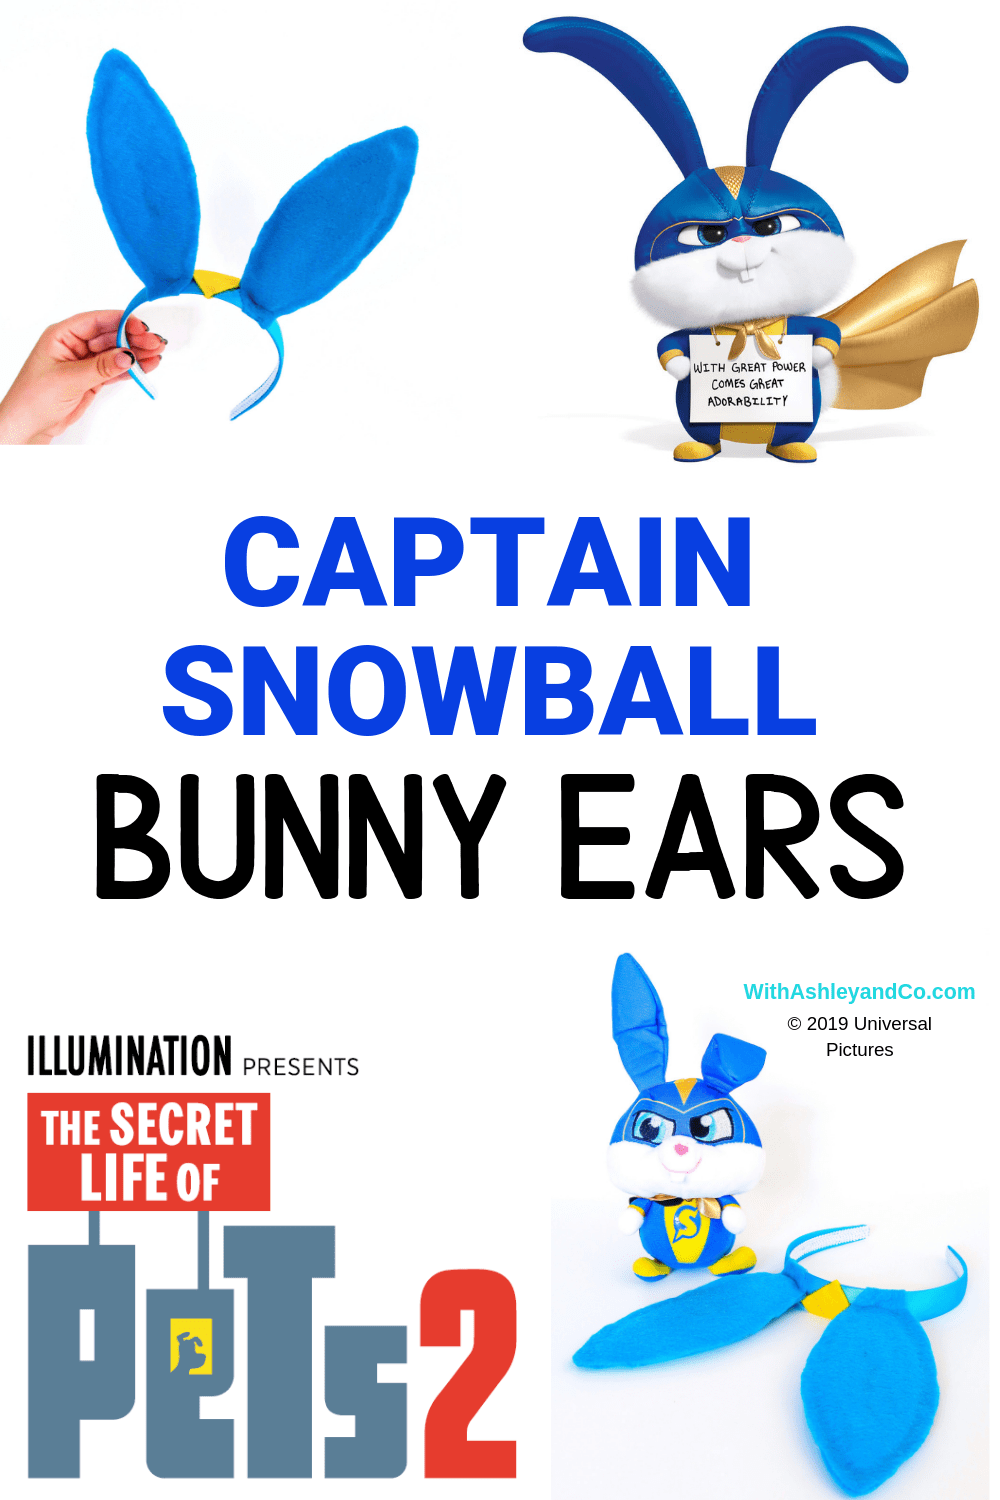 DIY Captain Snowball Ears